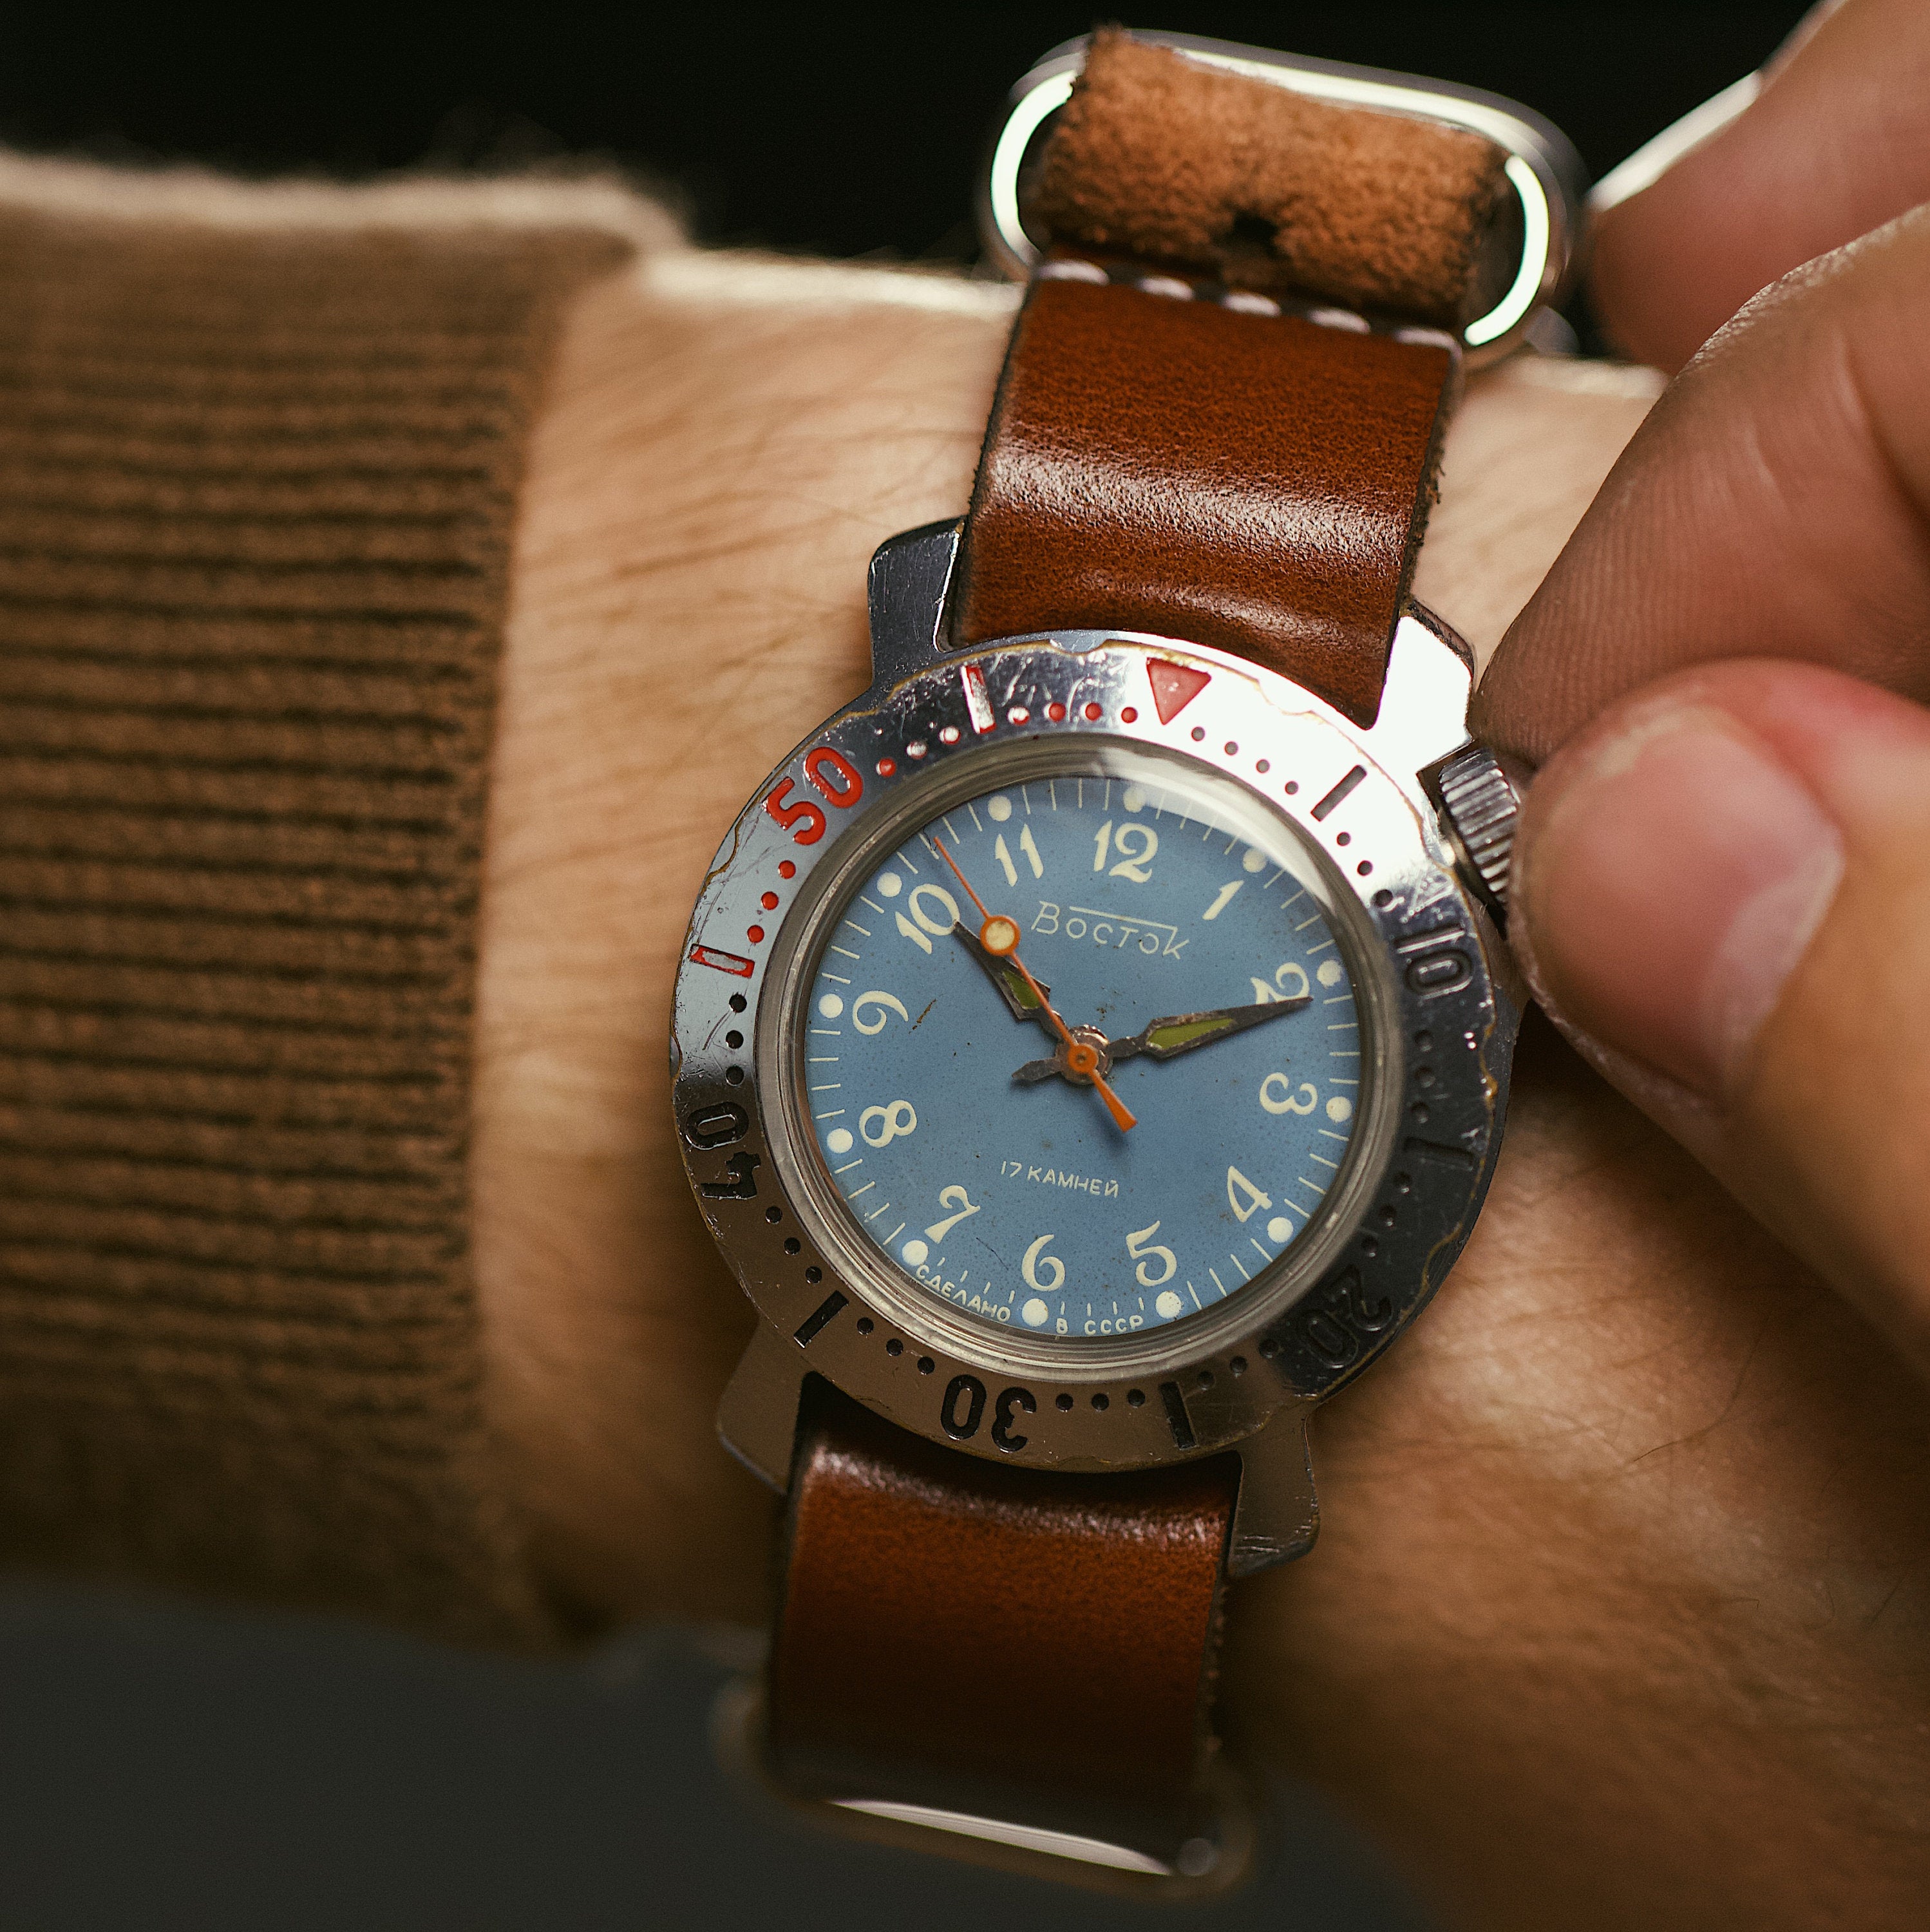 Vintage waterproof military soviet men's wrist watch VOSTOK - Komandirskie with leather nato strap